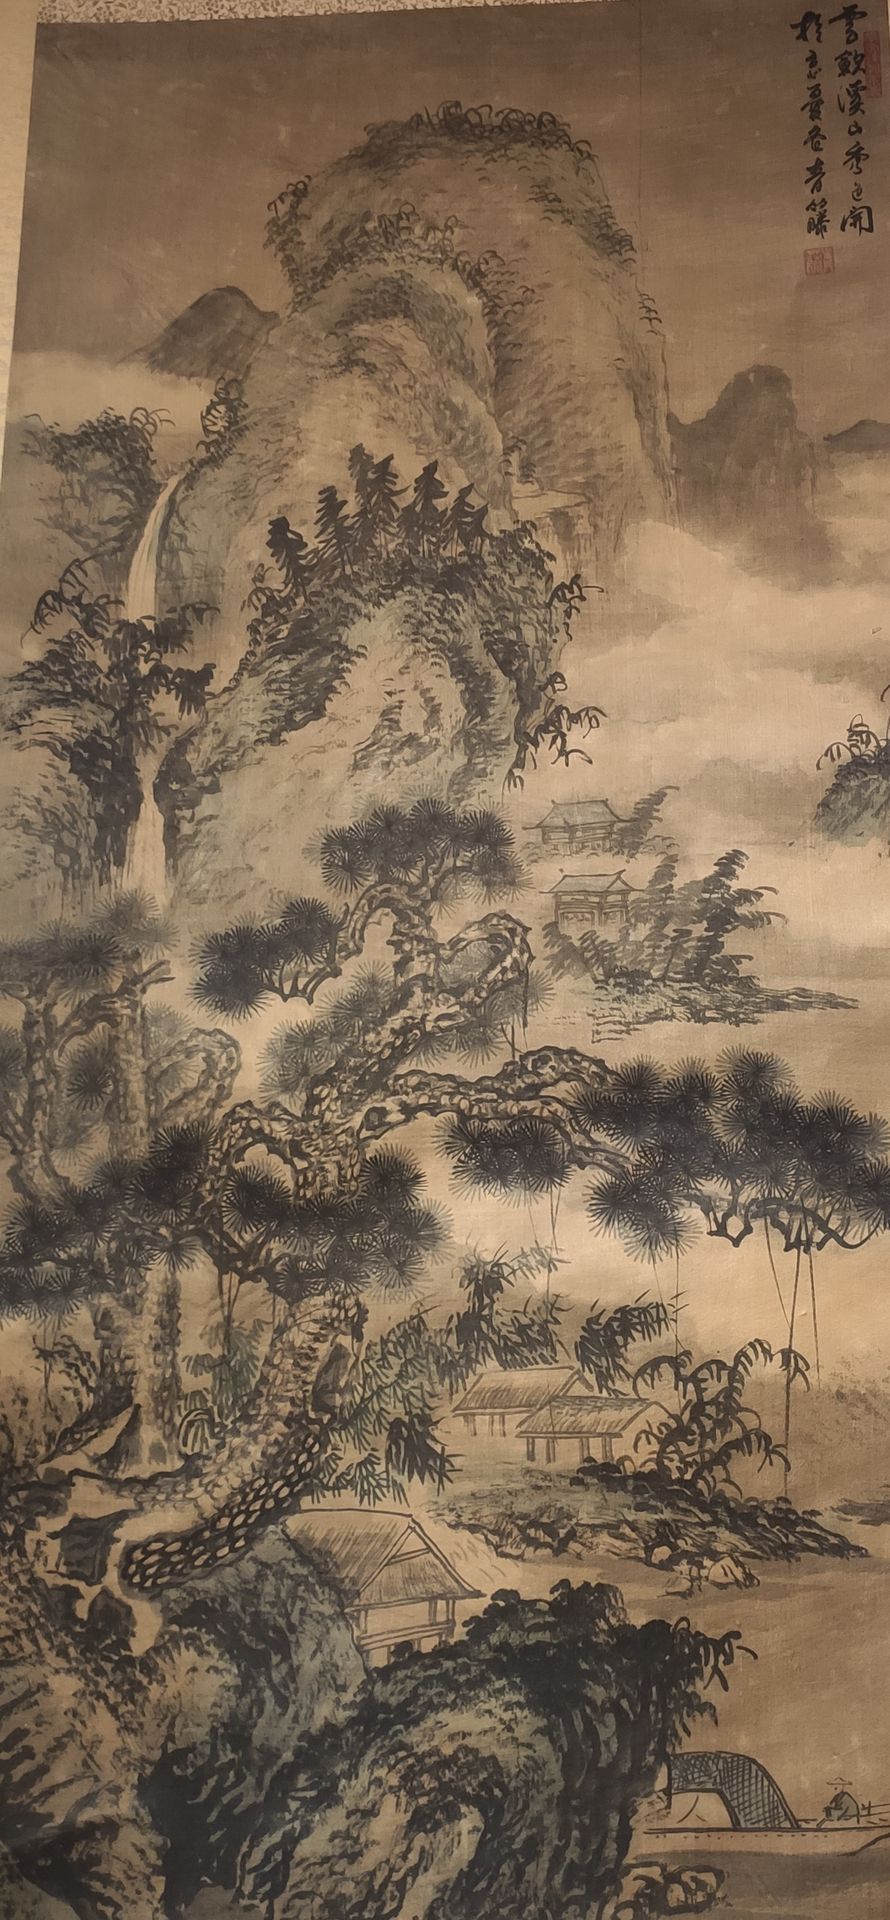 CHINE 画在卷轴上的山水在薄雾中迷失。卷轴右侧的题字和印章